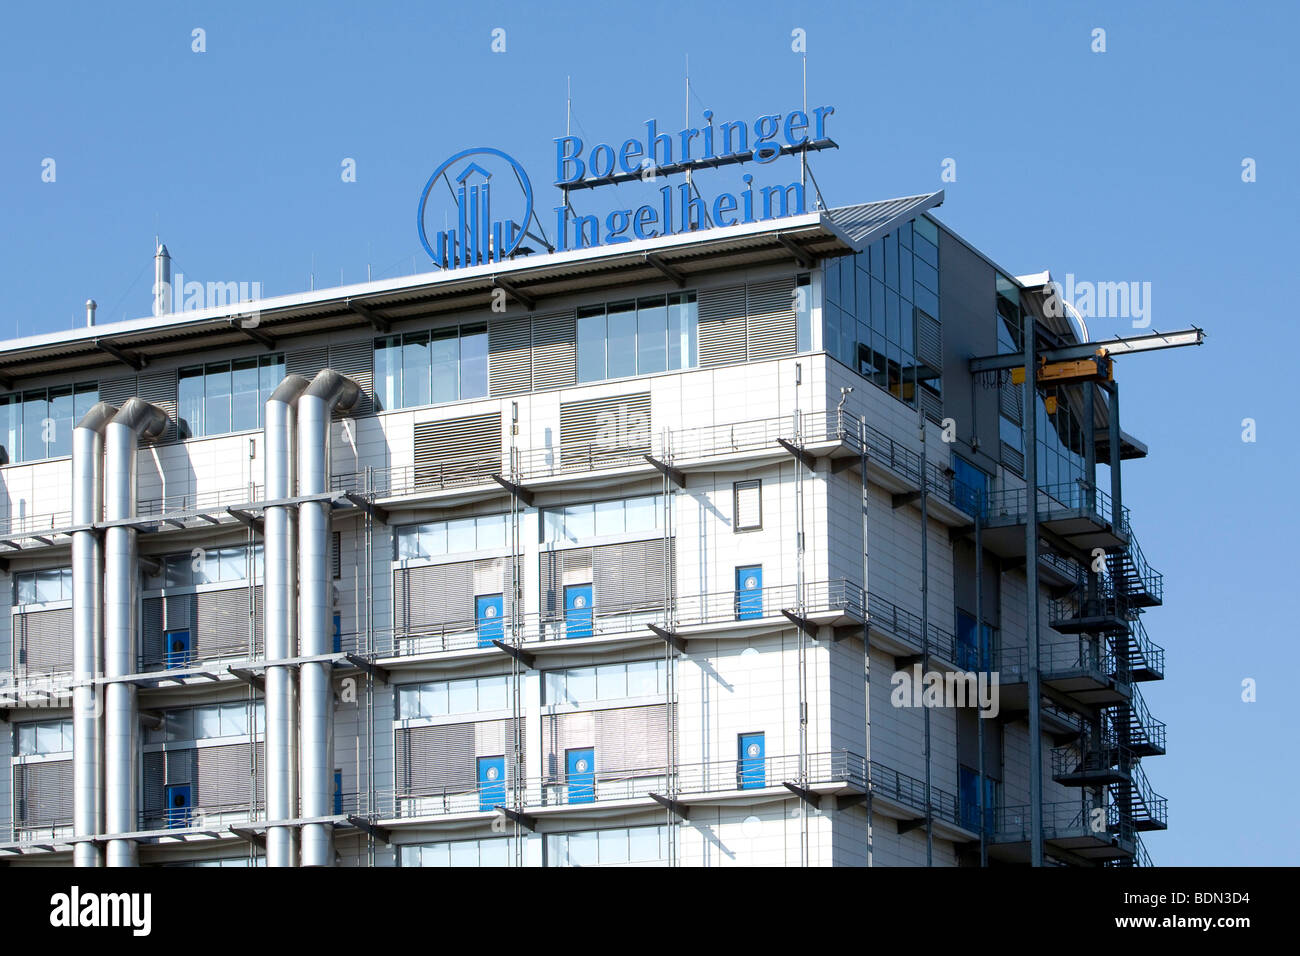 Ingrédient pharmaceutique actif de l'usine l'entreprise pharmaceutique Boehringer Ingelheim GmbH, Ingelheim, Rhineland-Palatina Banque D'Images